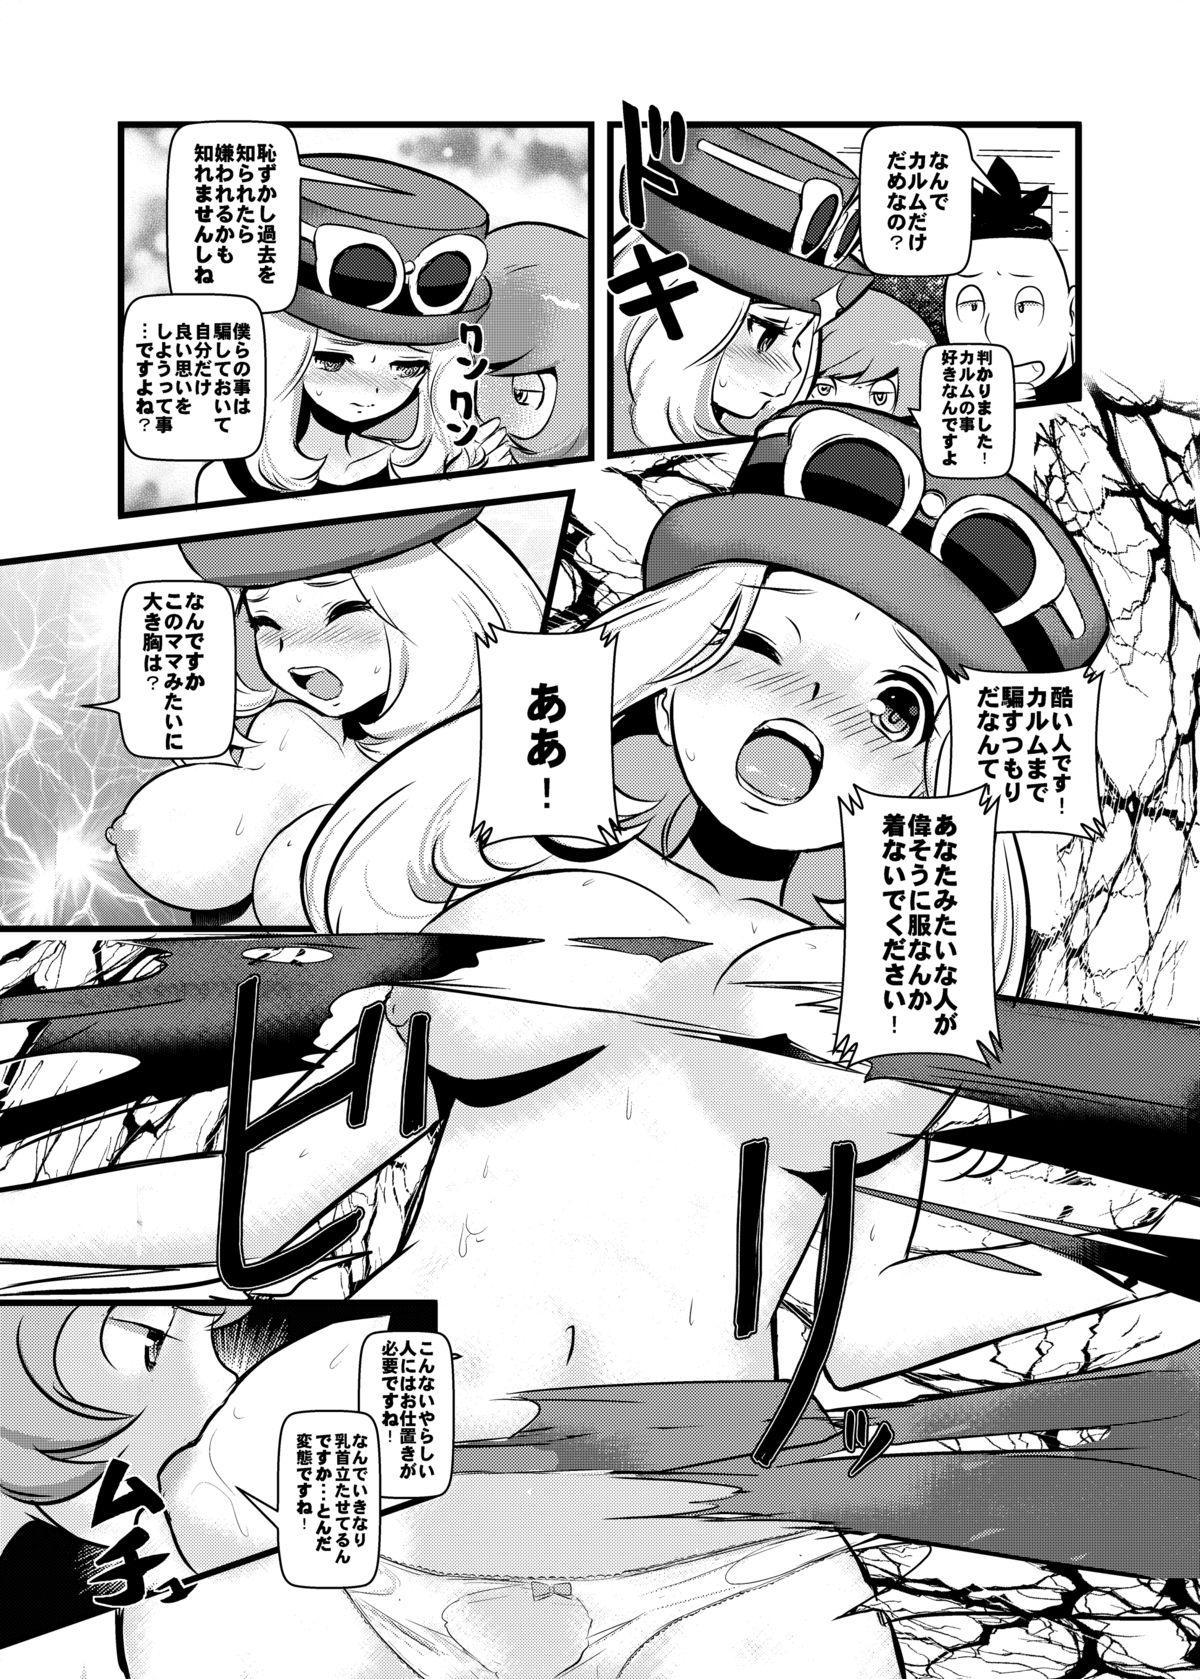 Puta HAKOIRI MUSUME - Pokemon Cameltoe - Page 6